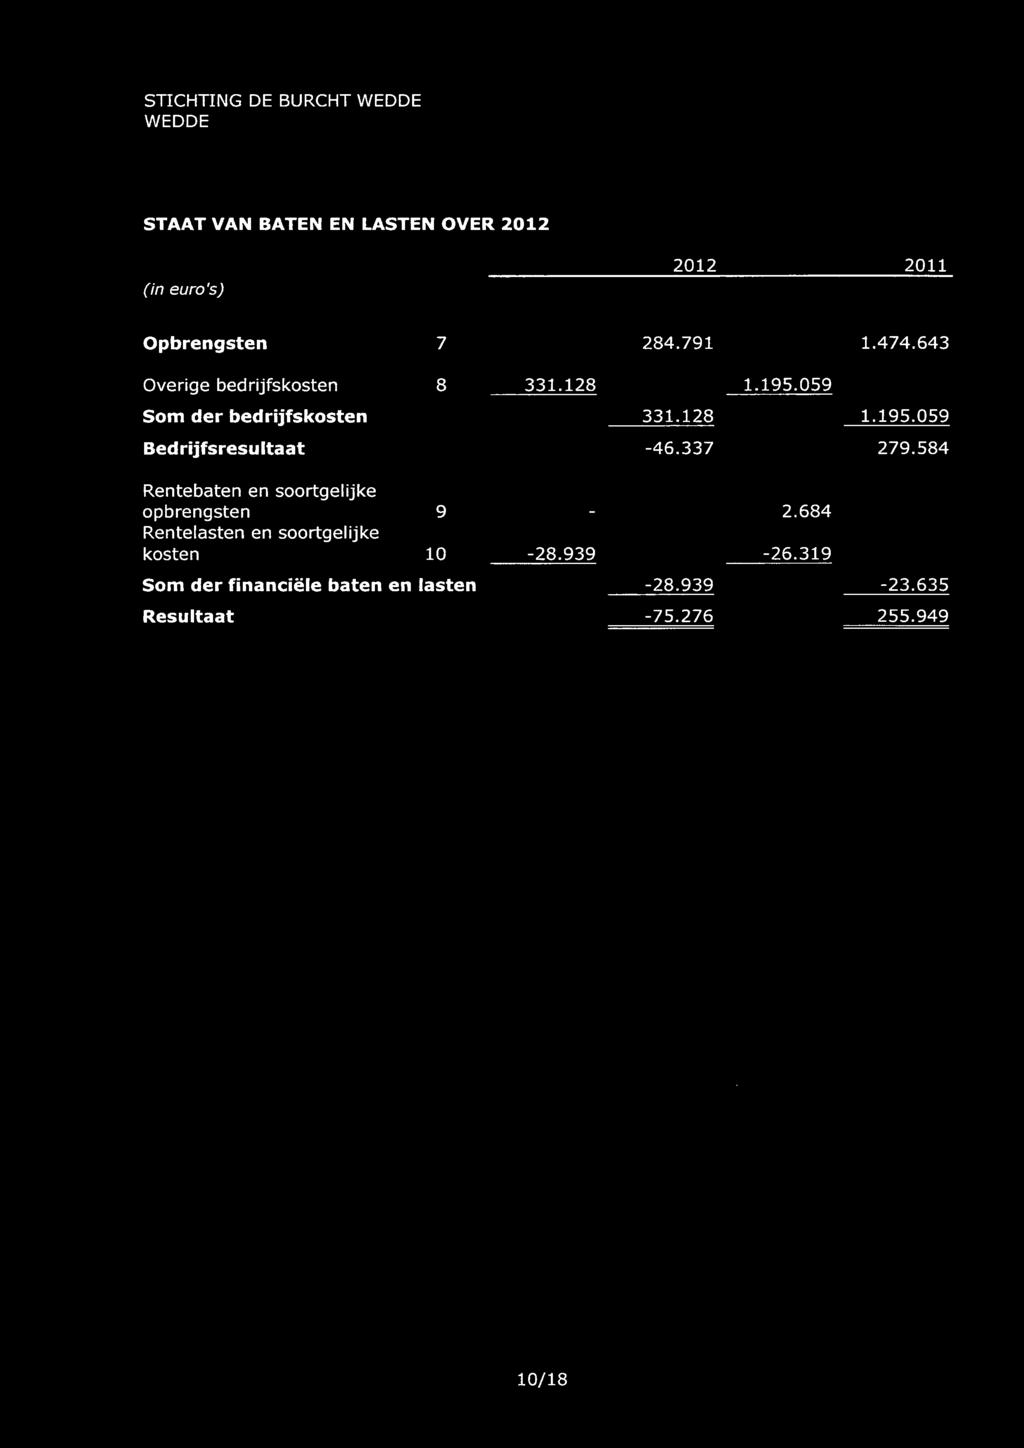 STICHTING DE BURCHT STAAT VAN BATEN EN LASTEN OVER 2012 (in euro's) 2012 2011 Opbrengsten 7 284.791 1.474.643 Overige bedrijfskosten 8 331.128 1.195.059 Som der bedrijfskosten 331.128 1.195.059 Bed rijfsresu Itaat -46.